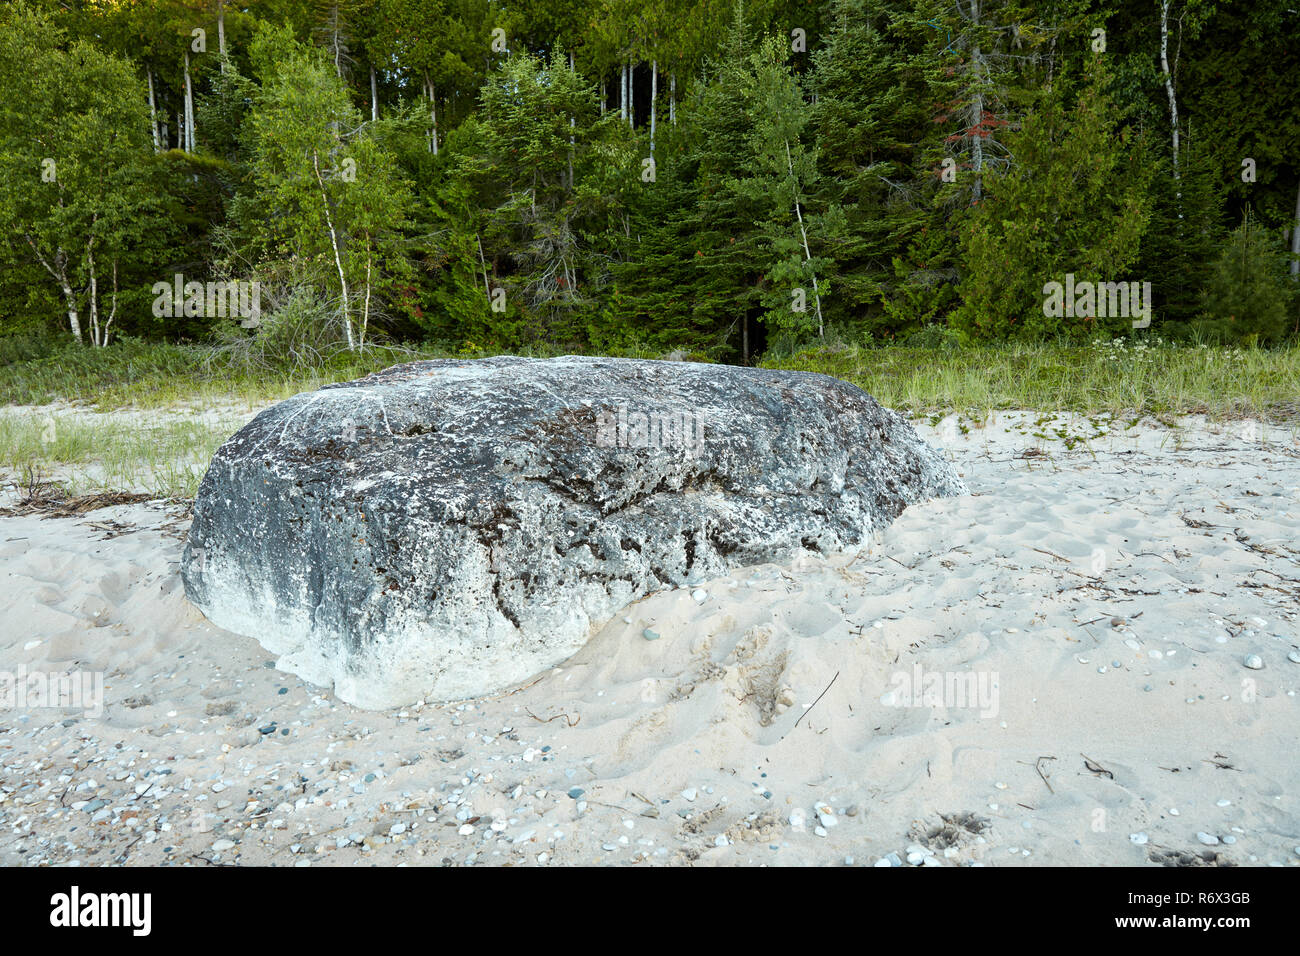 Heilige Rock, einem großen Granitblock am Strand im Nordosten von Michigan von Native Americans als Grenzmarkierungen und Opferaltar verwendet Stockfoto